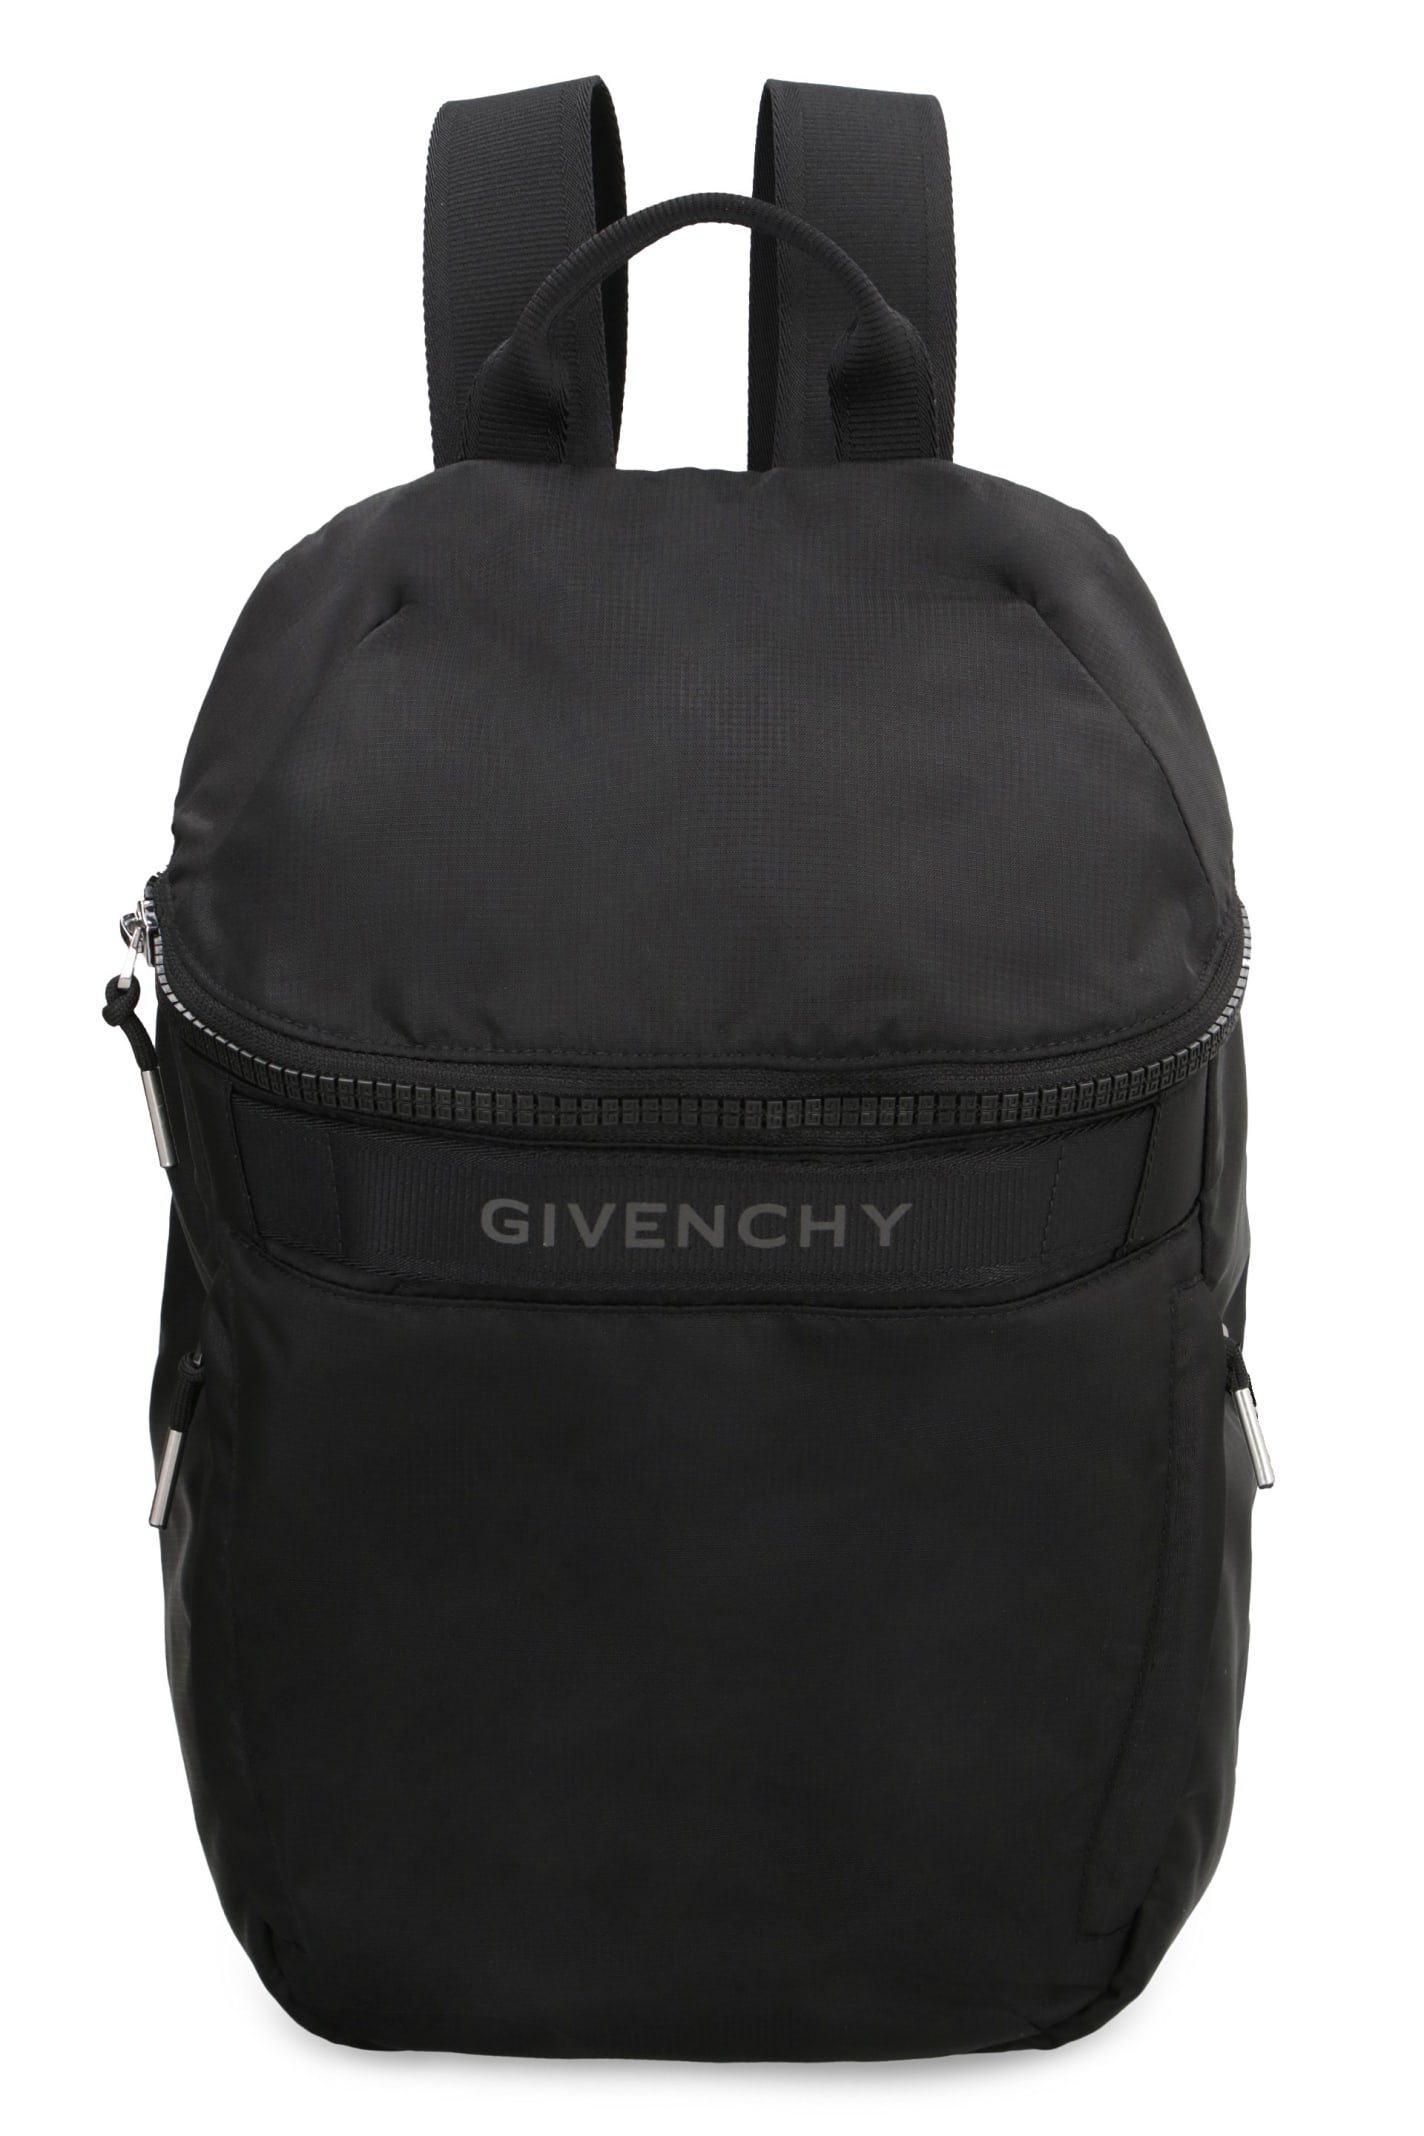 Givenchy G-trek Logo Detail Nylon Backpack In Nero